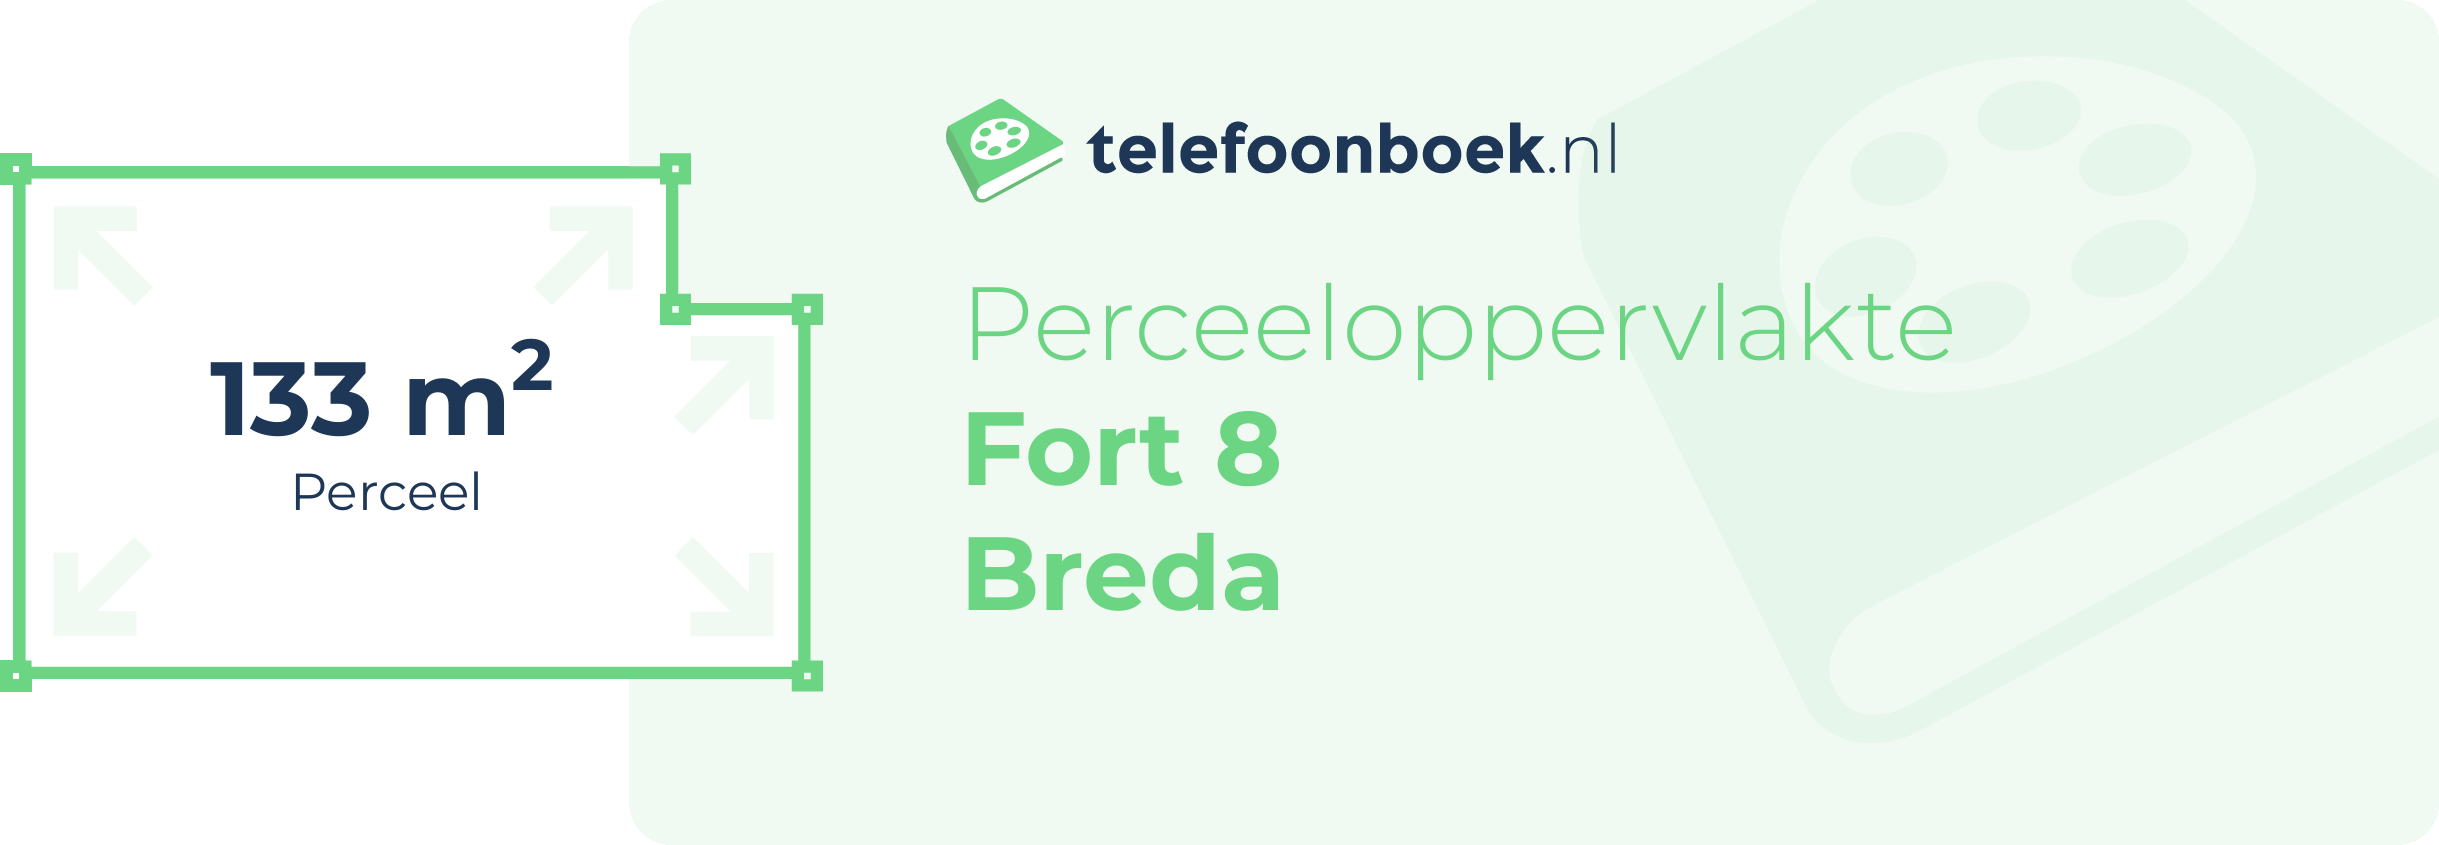 Perceeloppervlakte Fort 8 Breda